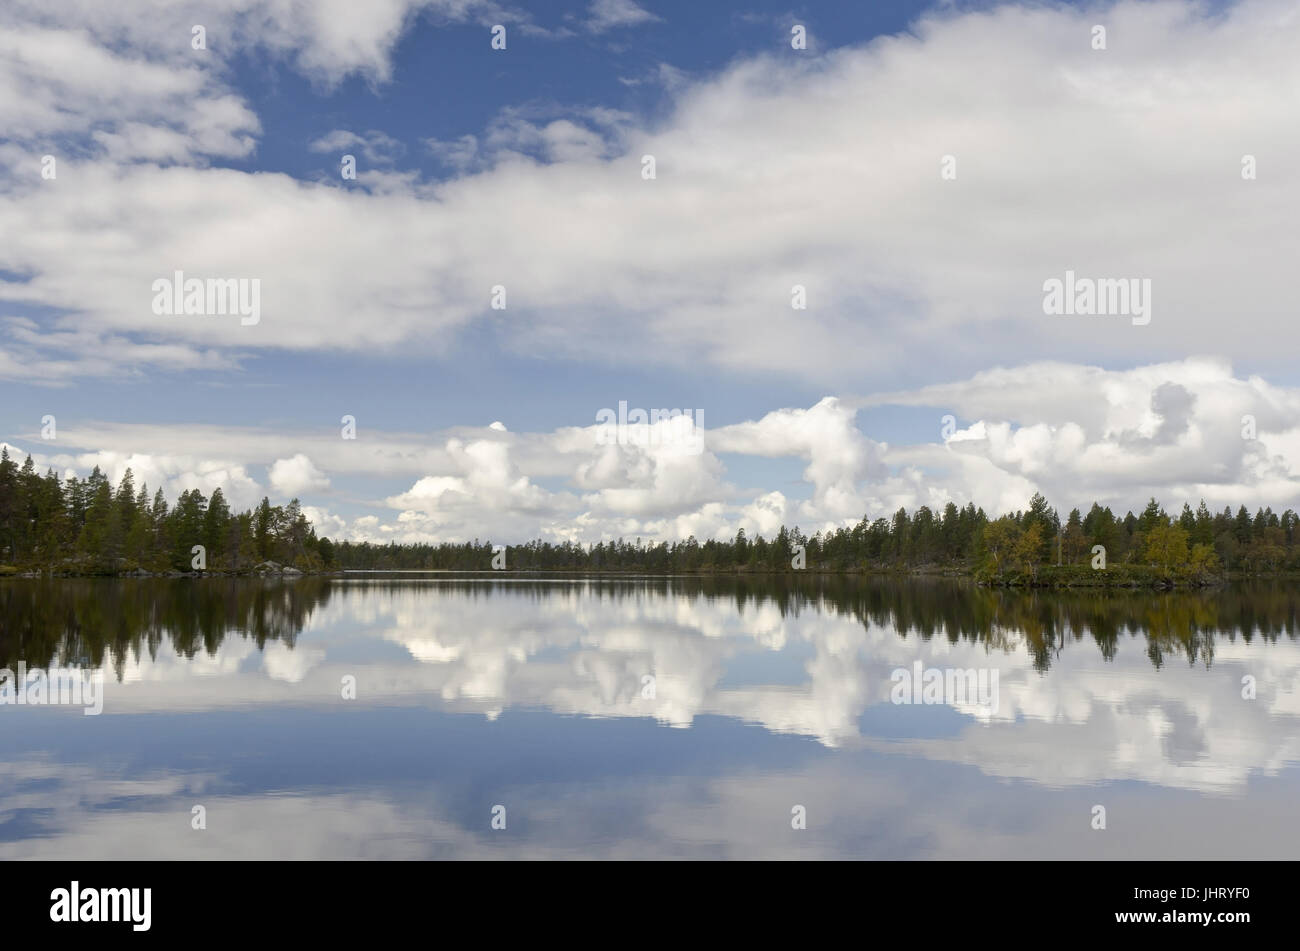 Le nubi sono riflesse in un lago nella riserva naturale del ROE, Haerjedalen, Svezia, agosto 2011, Wolken spiegeln sich in einem vedere im Naturreservat Rogen Foto Stock